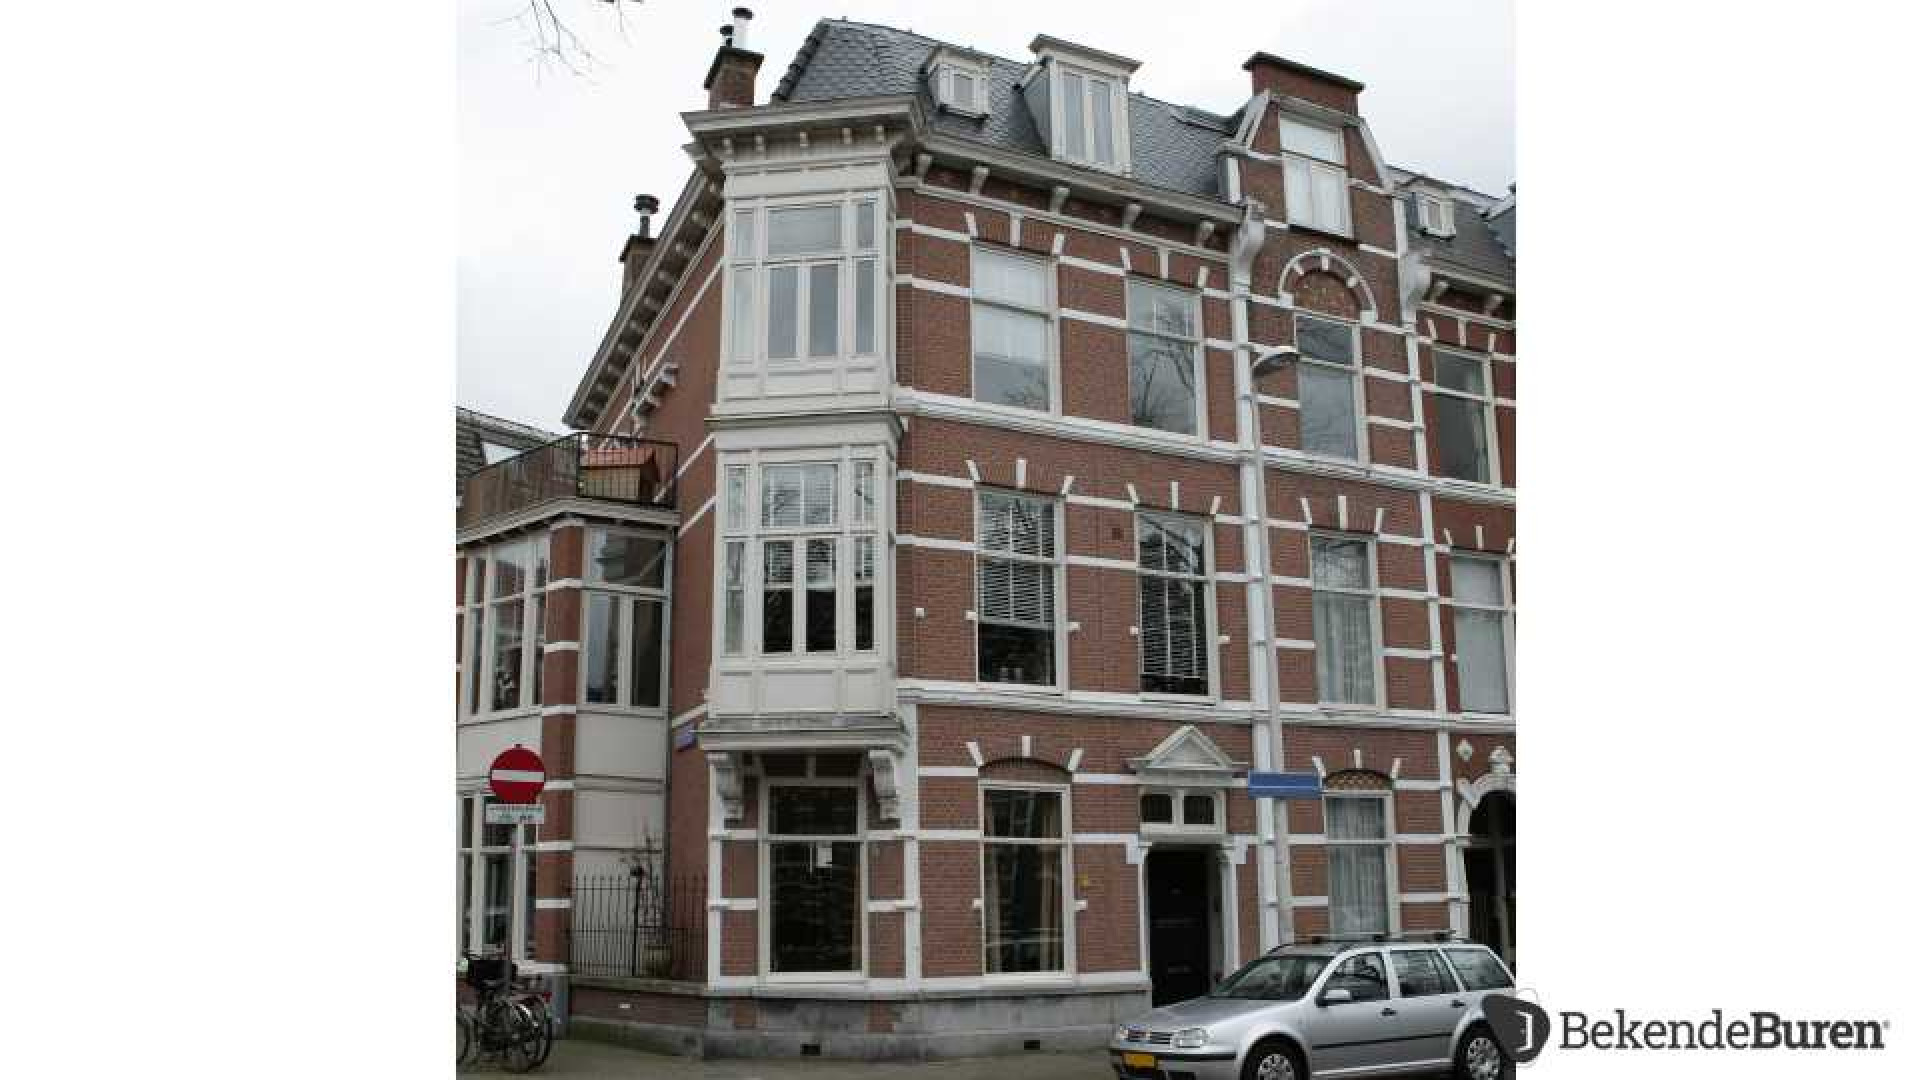 Dennis Storm verkoopt zijn Haagse dubbele bovenhuis. Zie foto's